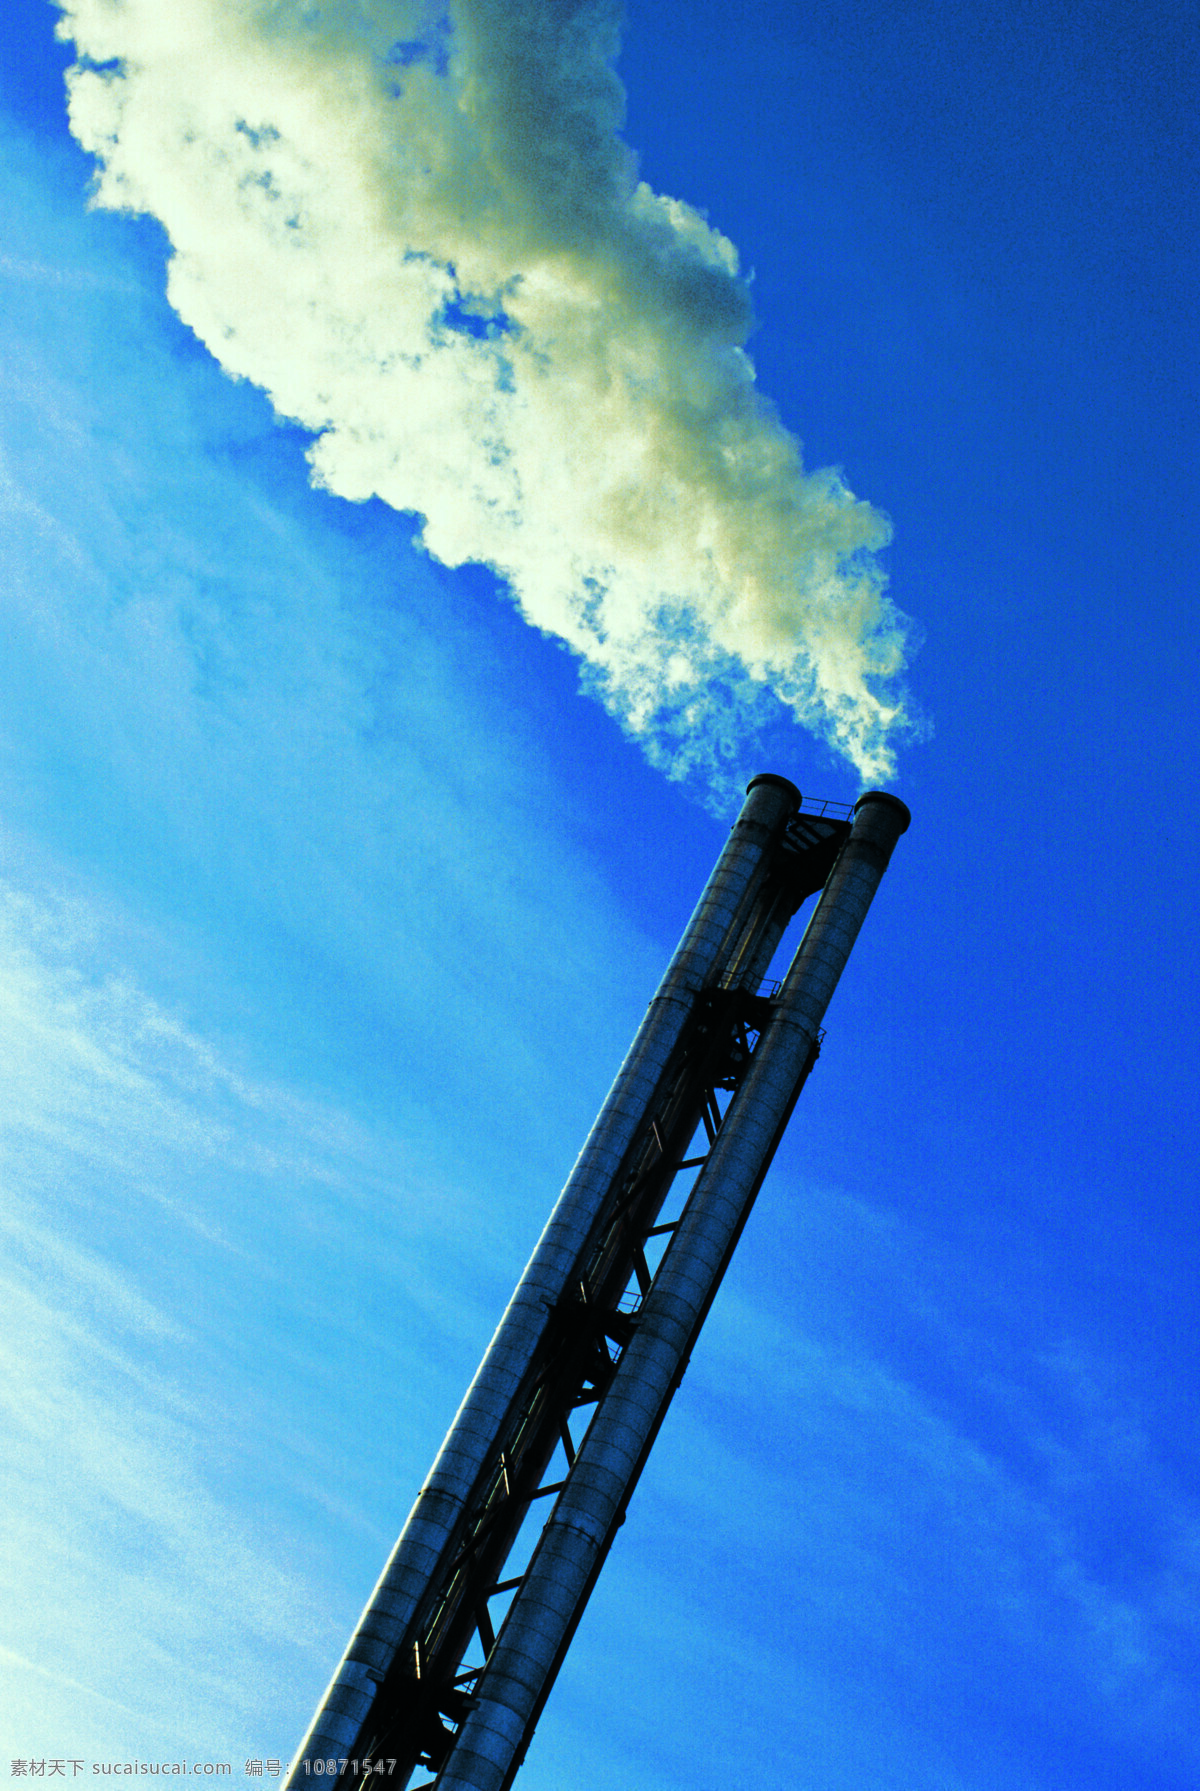 环保免费下载 大气污染 环保 环保图片 措施 现代科技